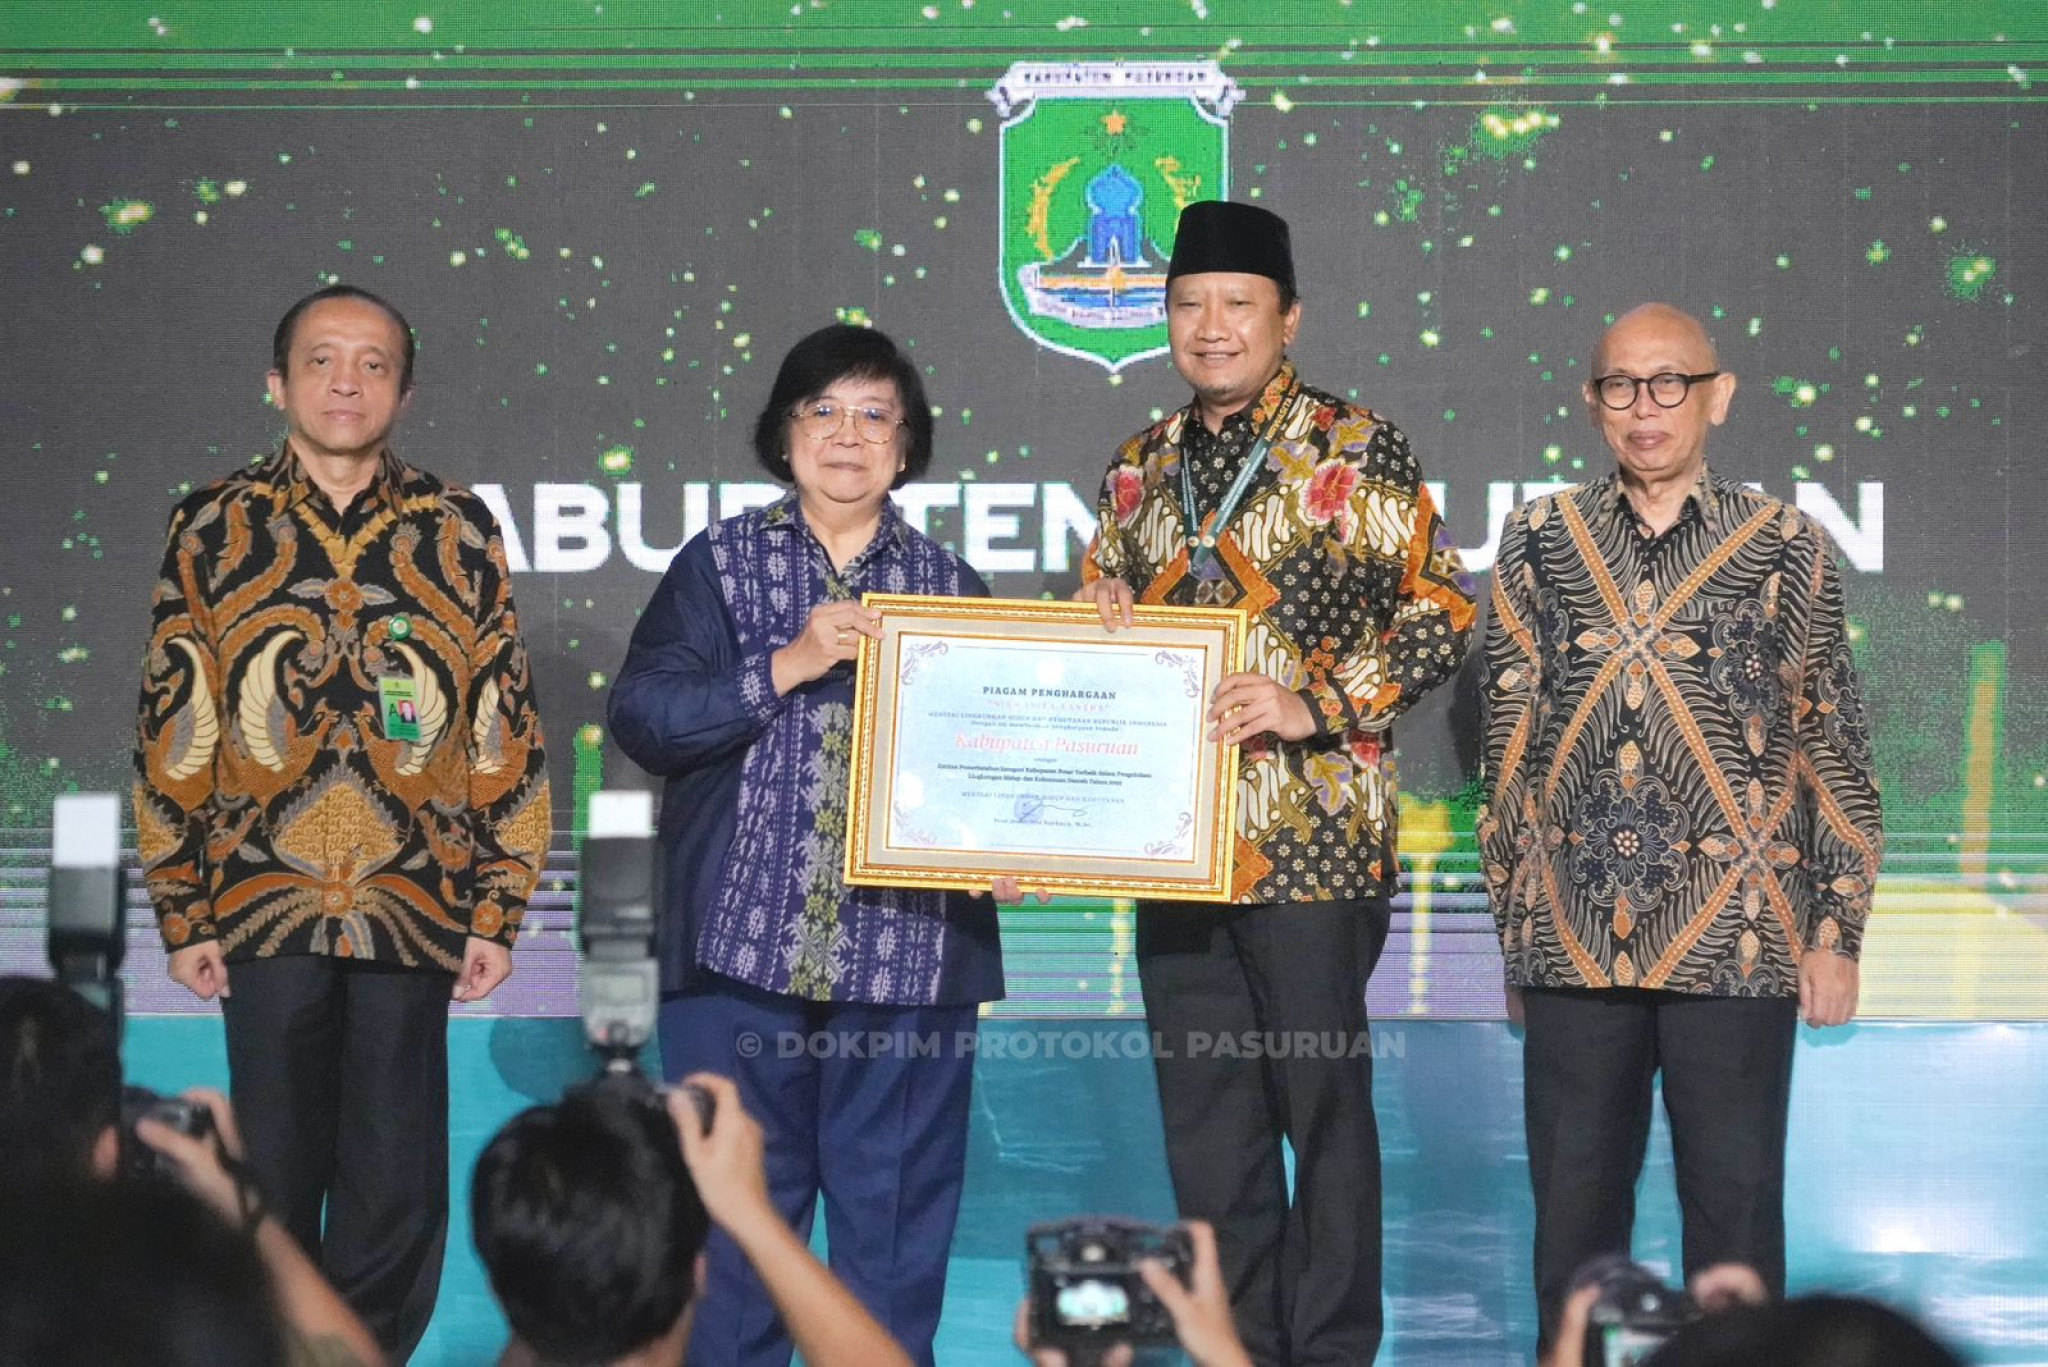 Bupati Irsyad Yusuf Raih Penghargaan Green Leadership Nirwasita Tantra 2022 dari Menteri LHK